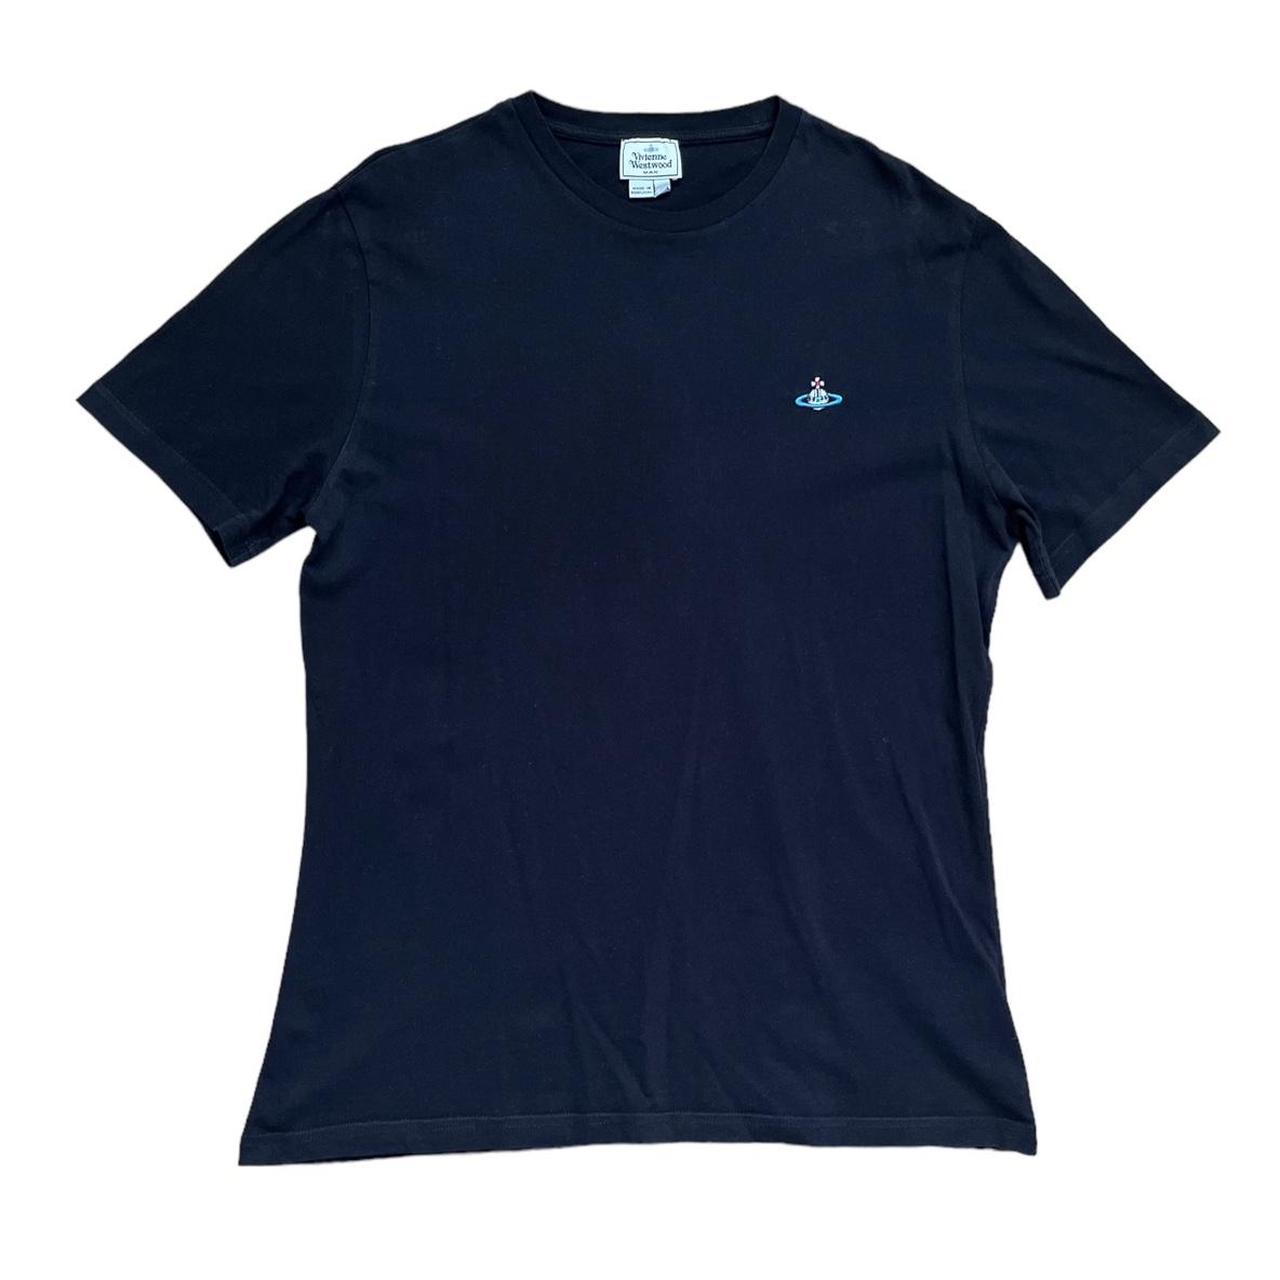 Authentic Black Vivienne Westwood T-Shirt 📦 FREE... - Depop